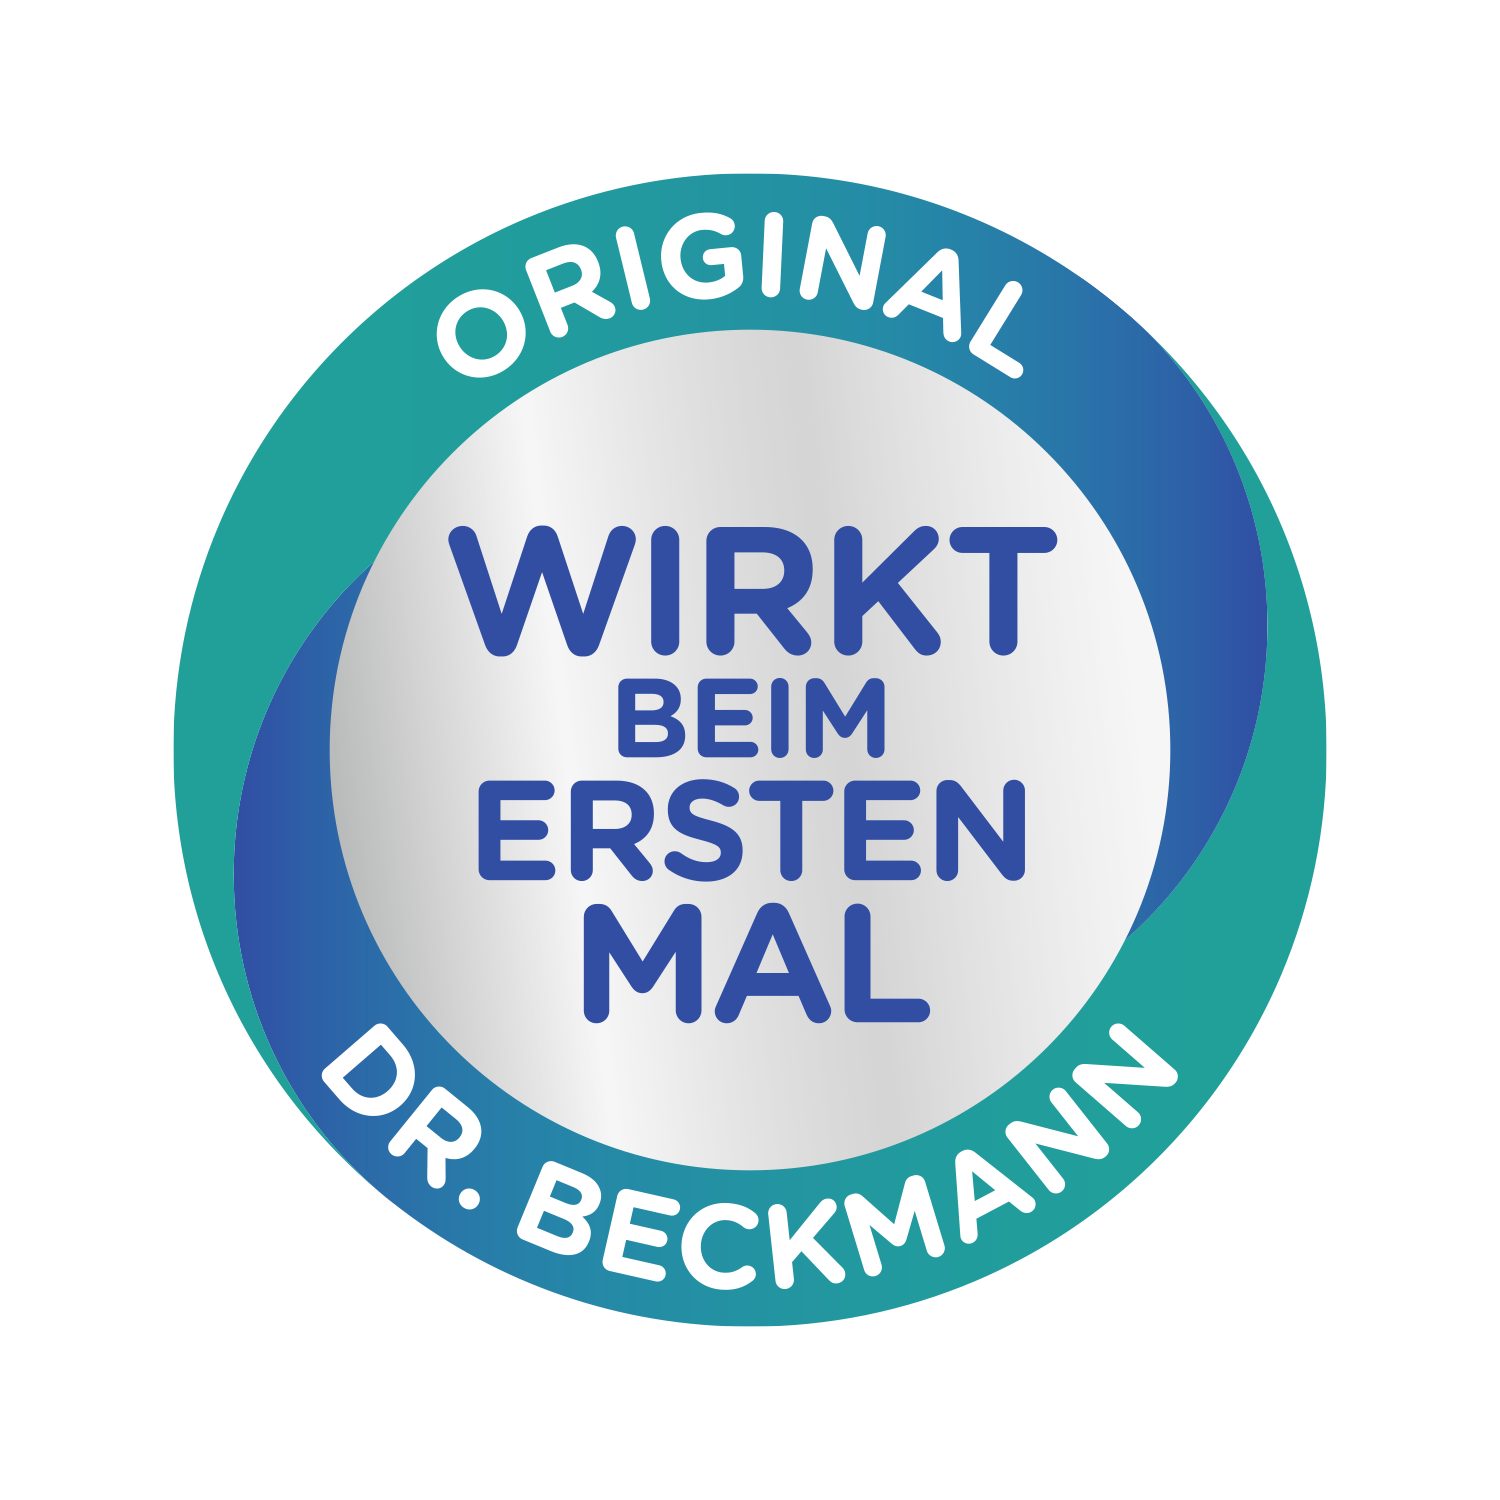 Dr. Beckmann Geruchsentferner, fasertief, ml Polsterreiniger 6x hartnäckige Gerüche (1-St) entfernt 500